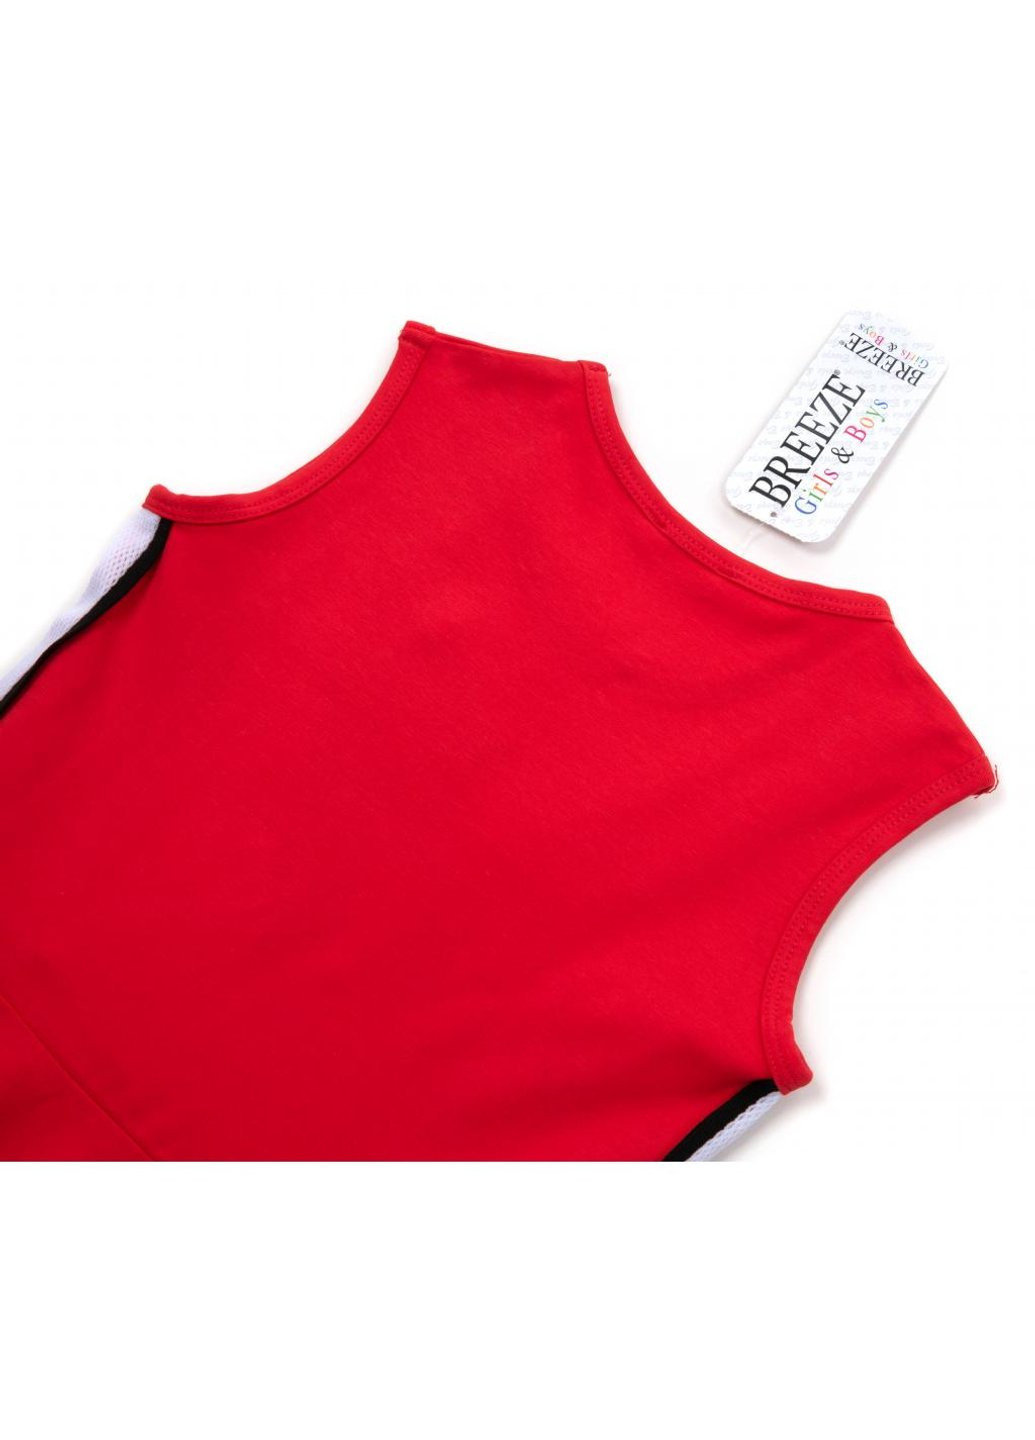 Красное платье со звездой (14410-164g-red) Breeze (257142038)